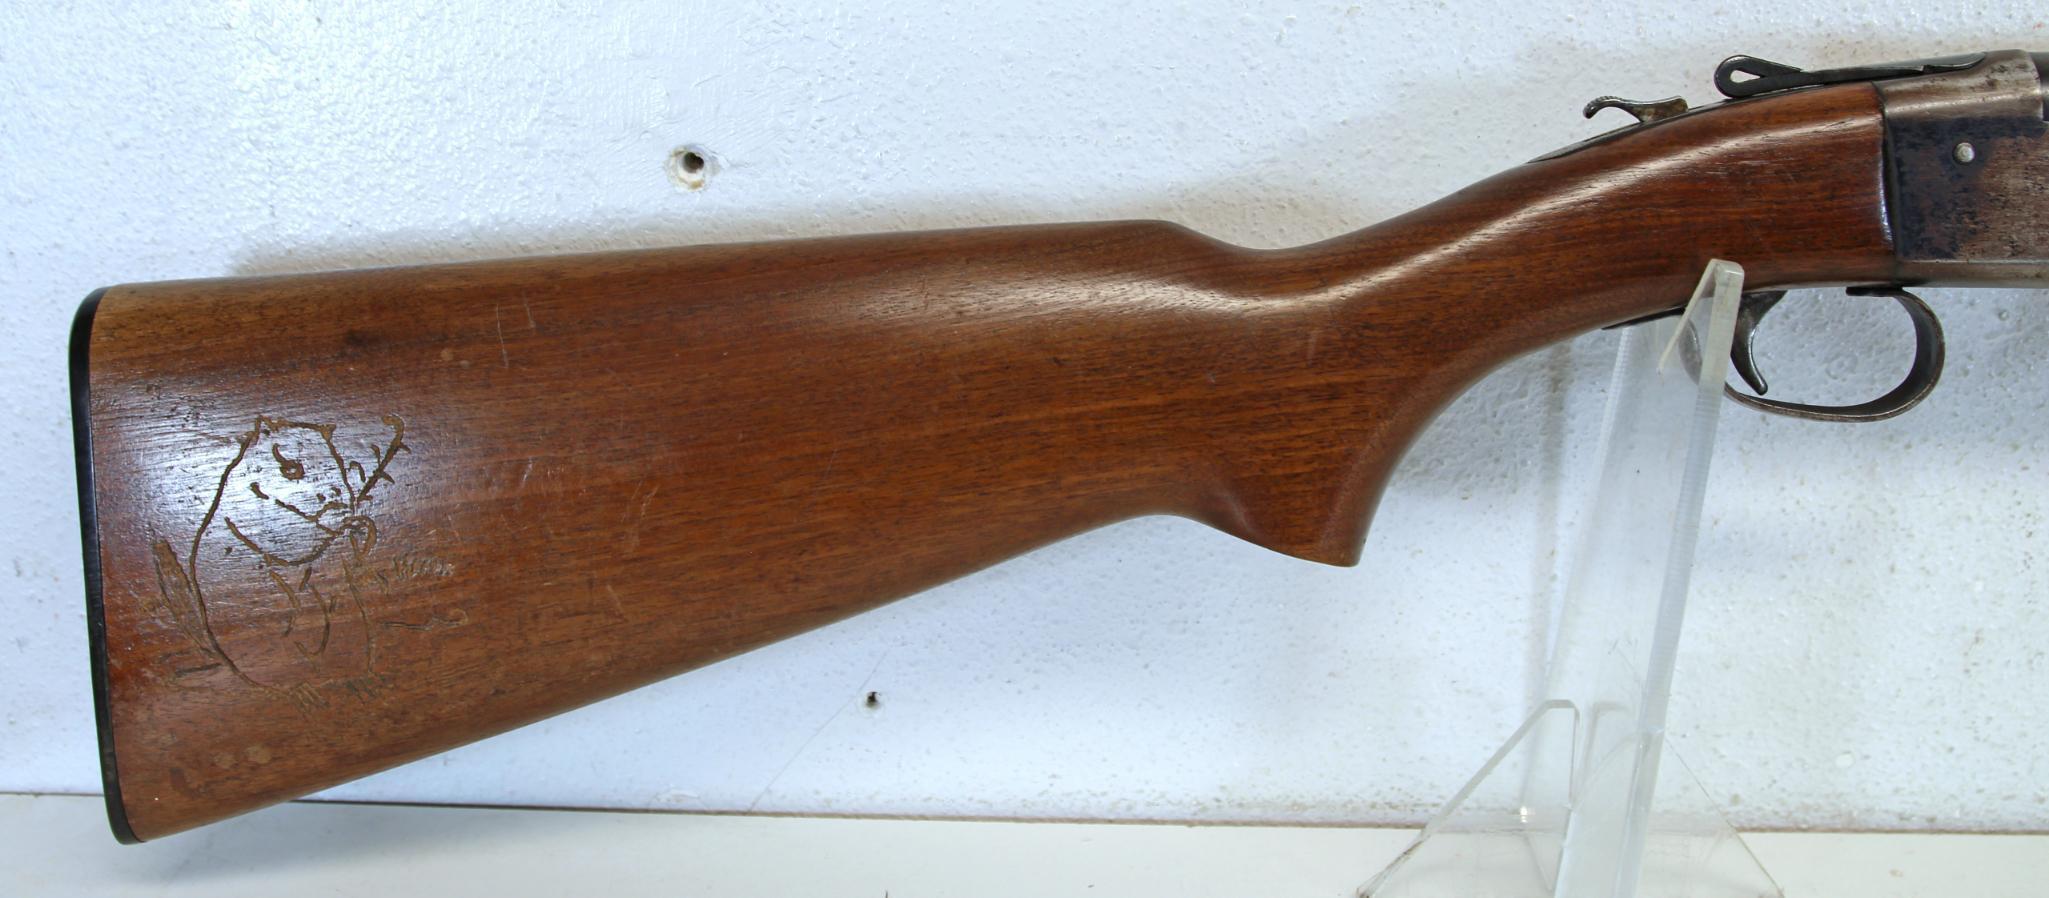 Winchester Model 37 .410 Ga. Single Shot Shotgun 26" Plain Barrel... 3" Chamber... Full Choke... Car